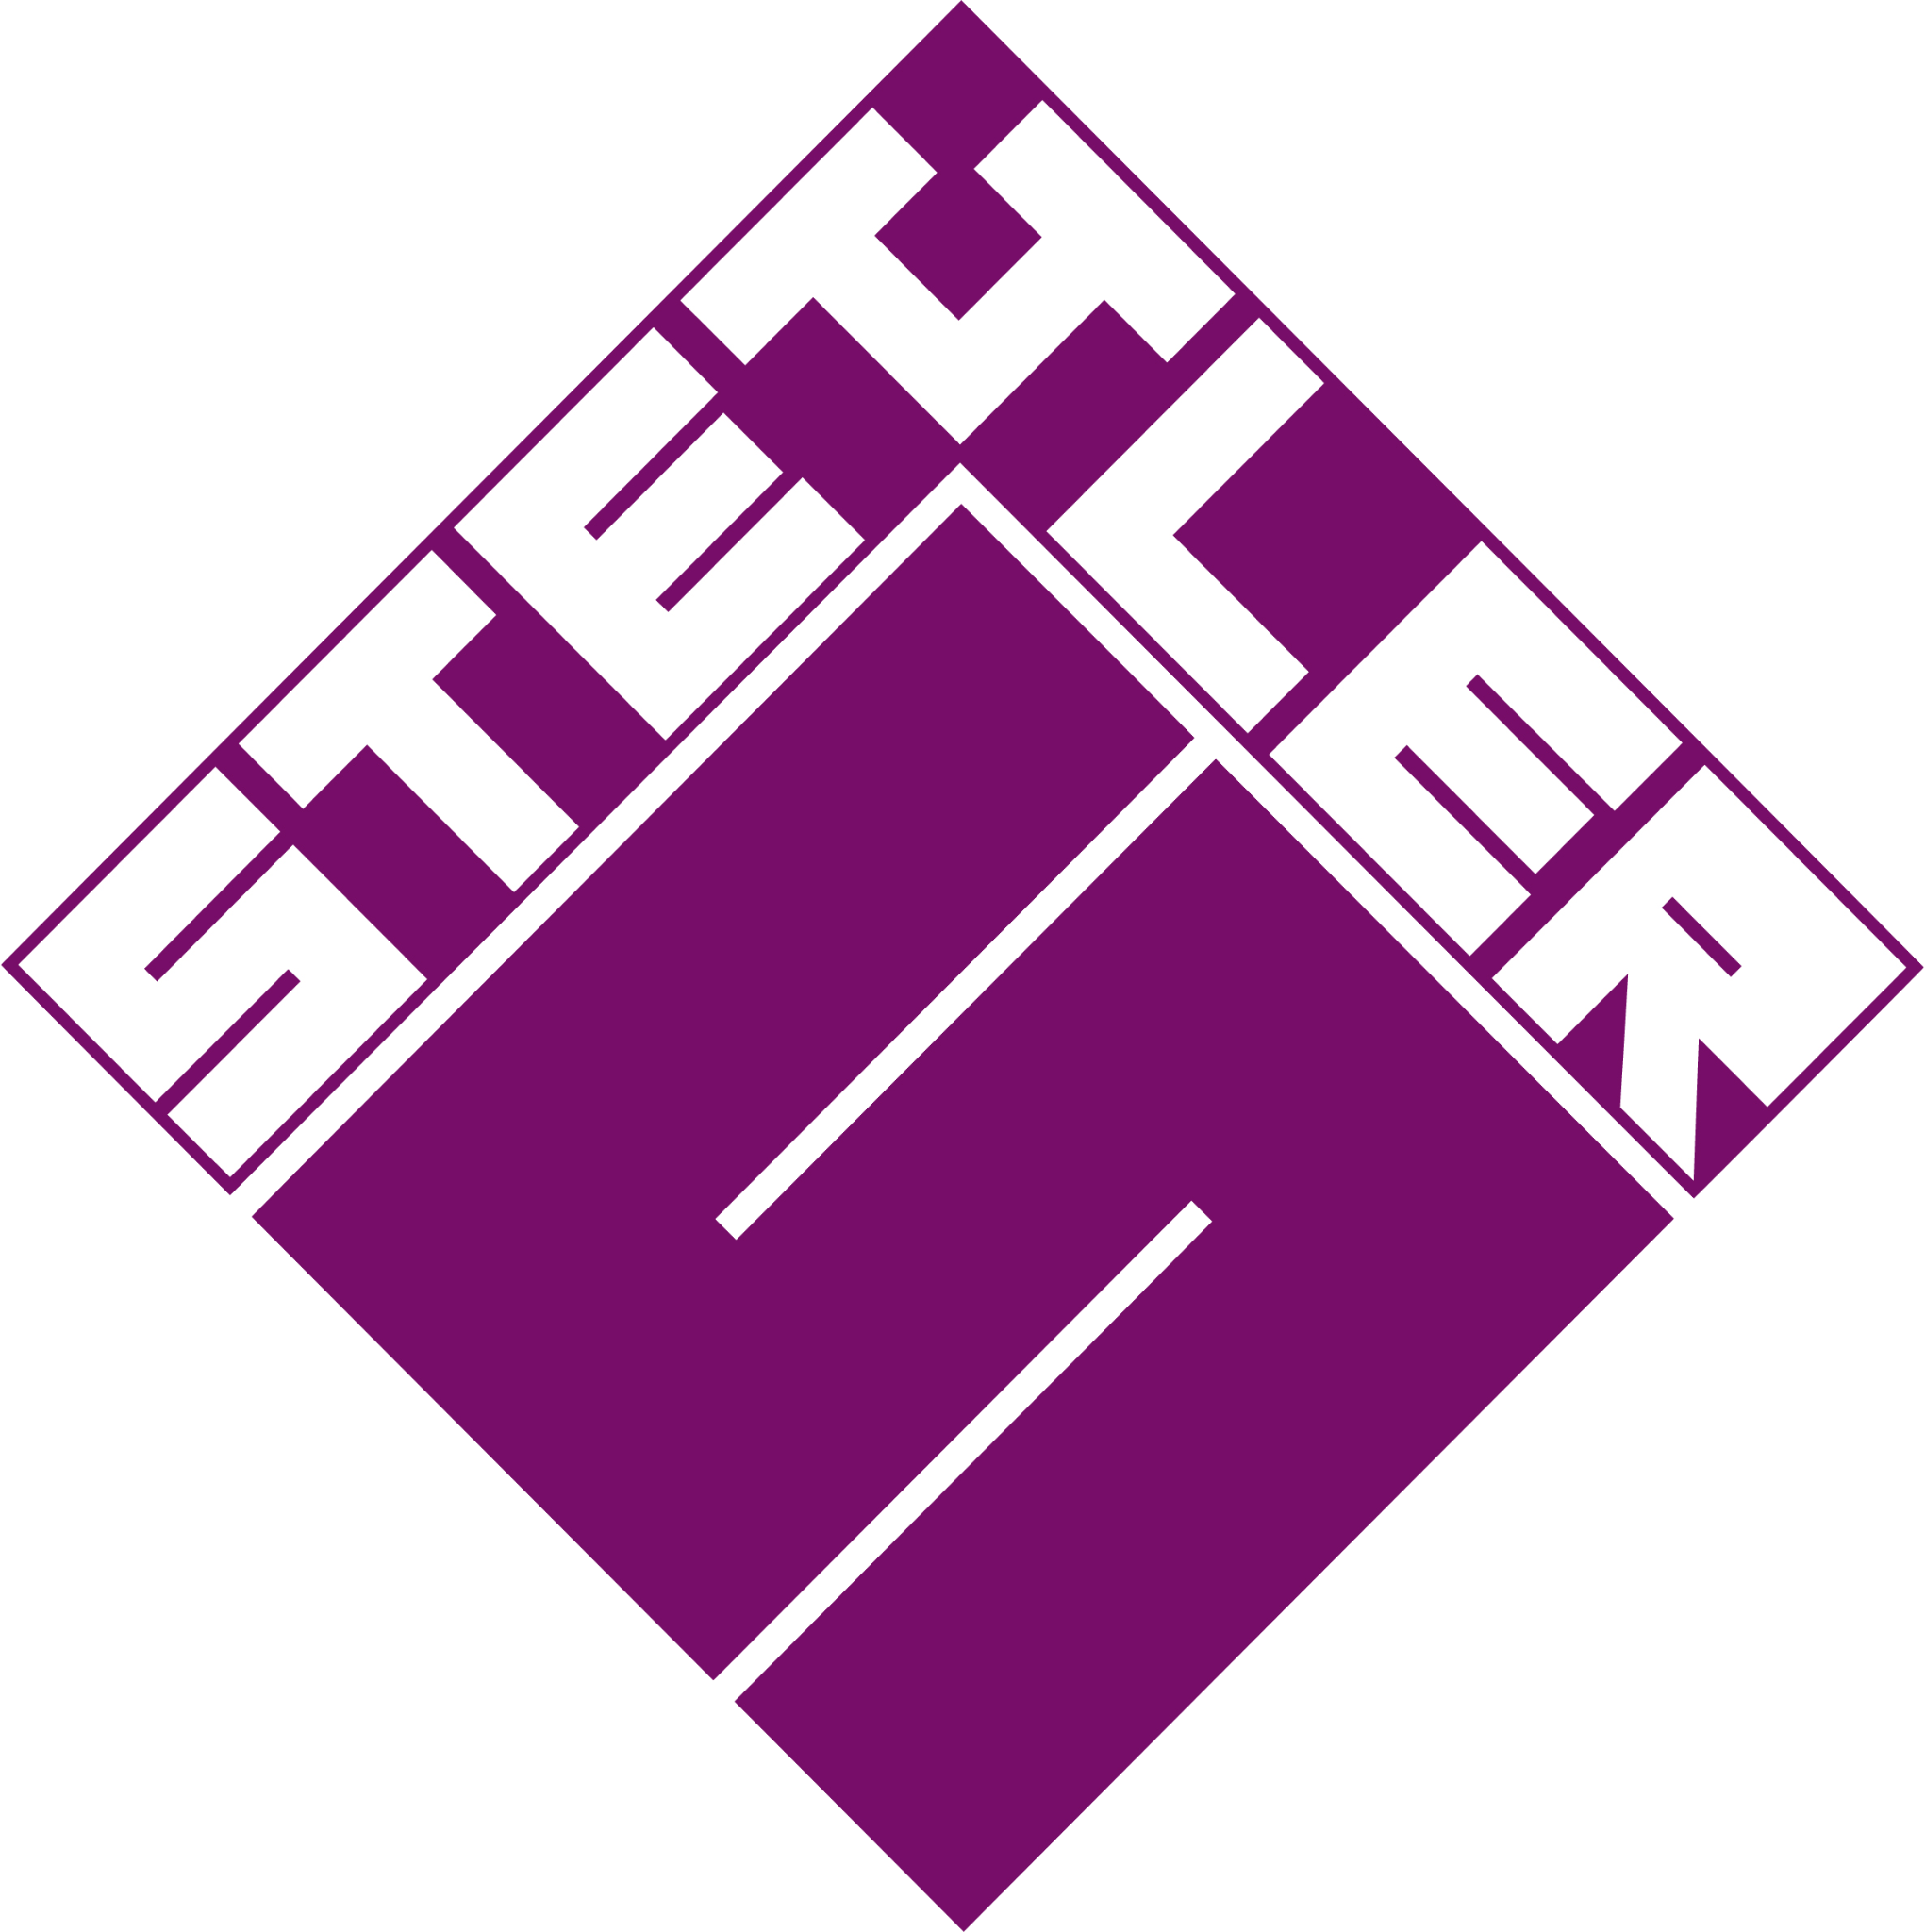 Stettler AG